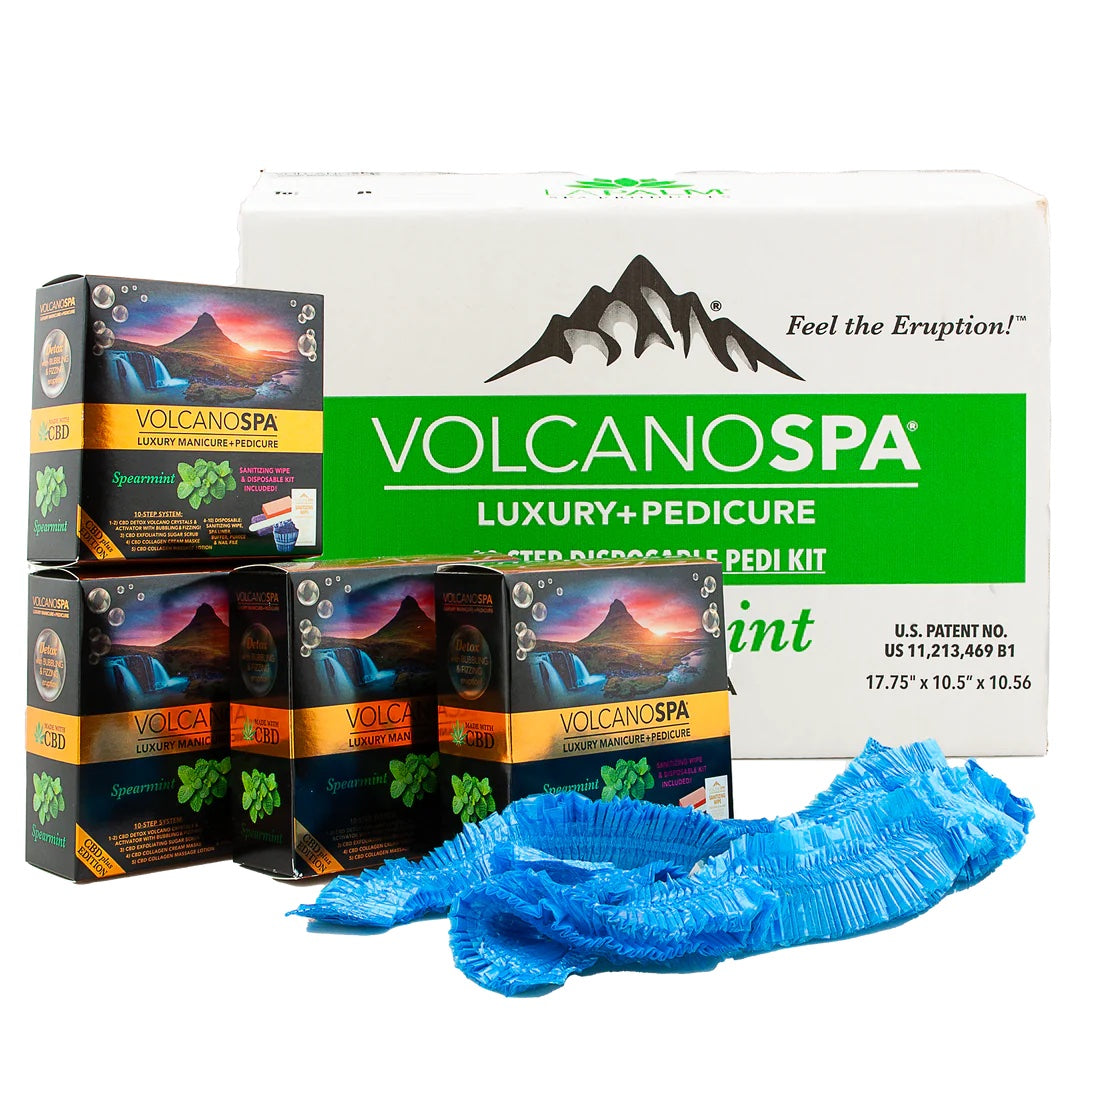 ATL- Volcano Spa CBD+ Edition 10in1 - Spearmint | La Palm